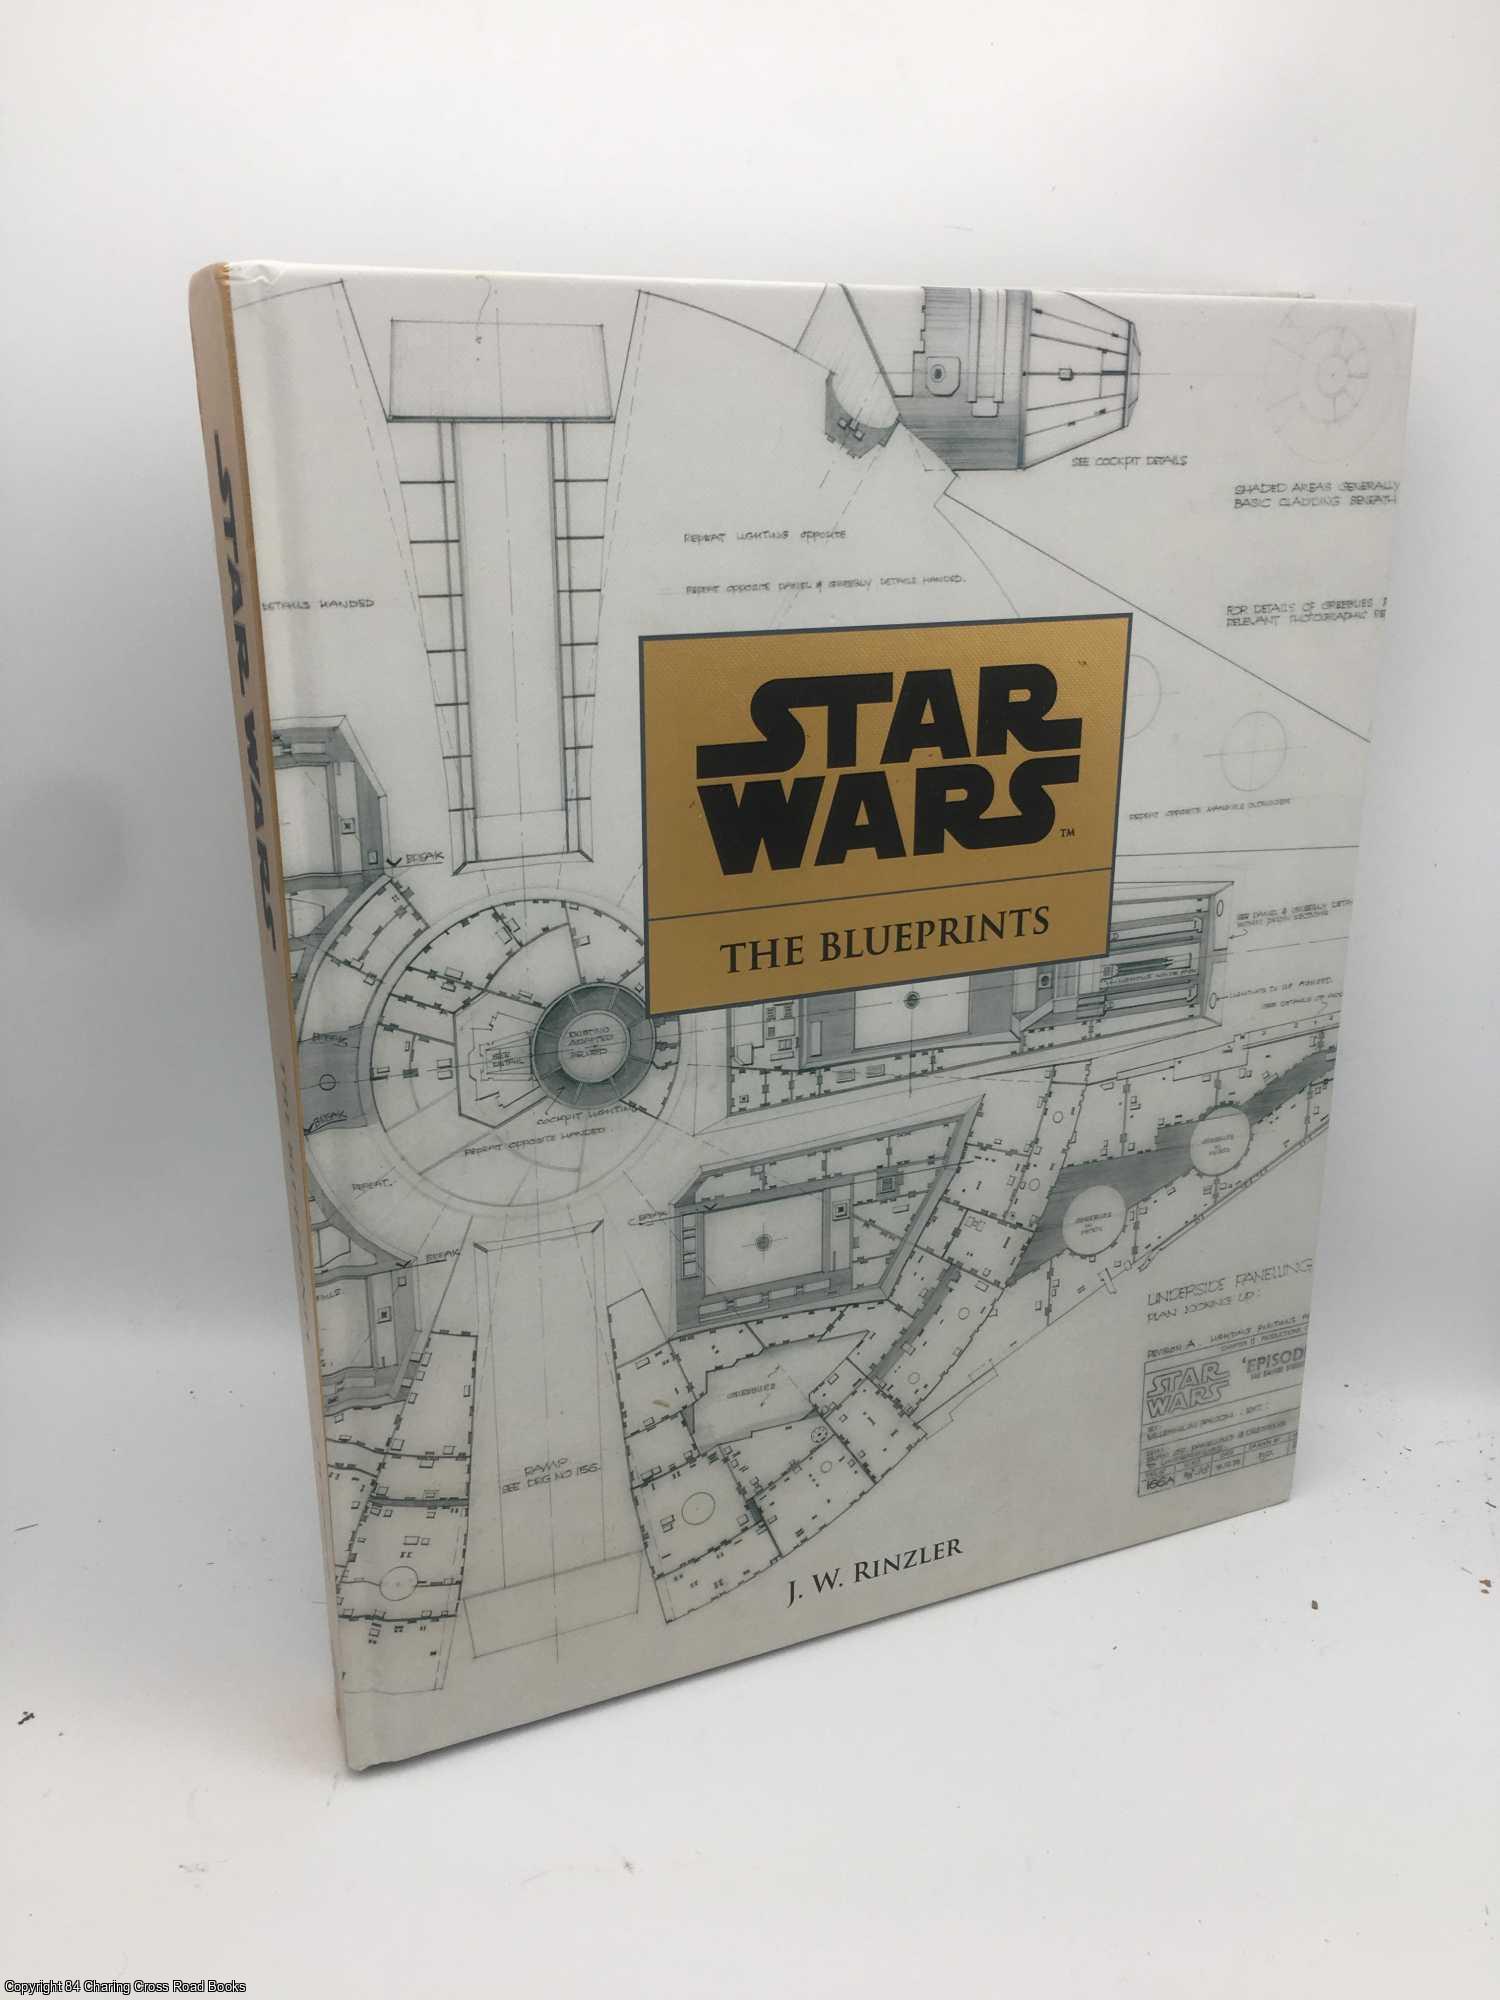 Rinzler, J. W. - Star Wars: The Blueprints